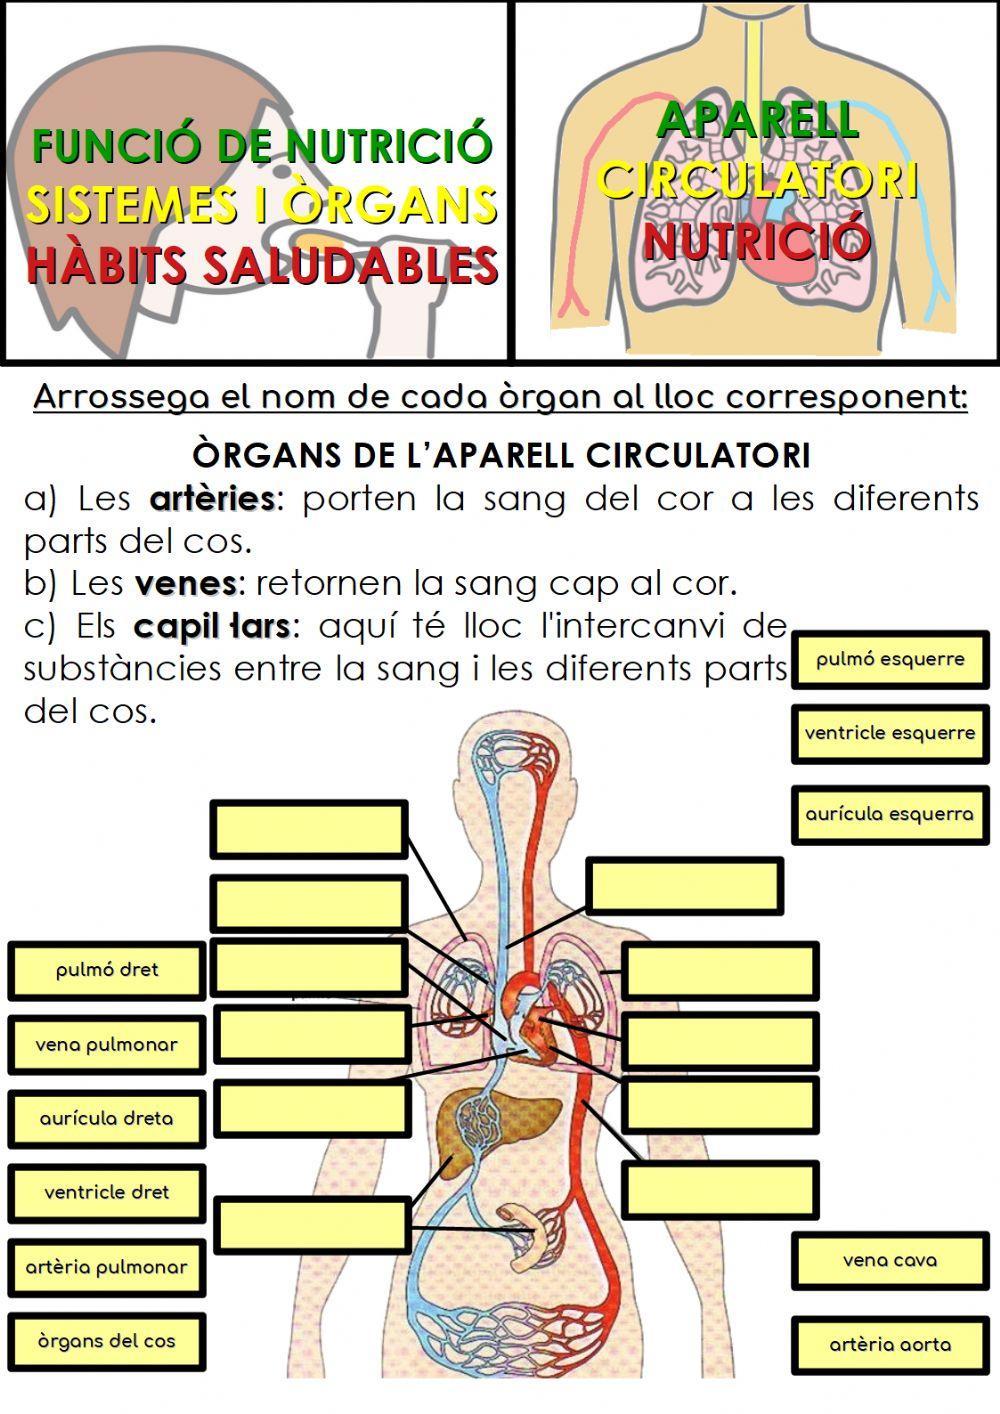 Òrgans de l'aparell circulatori